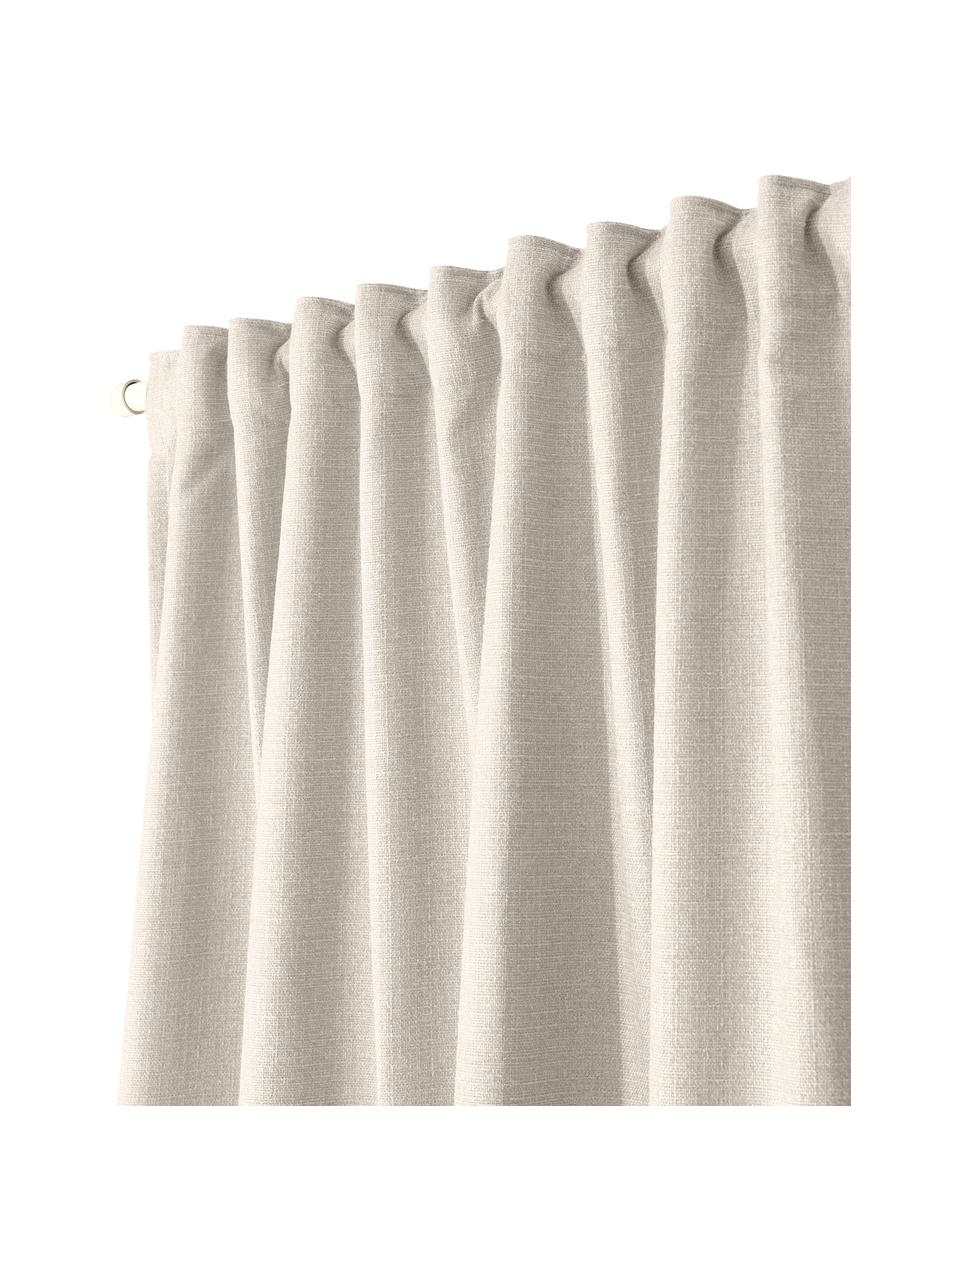 Ondoorzichtige gordijn Jensen in beige met multiband, 2 stuks, 95% polyester, 5% nylon, Beige, B 130 x L 260 cm